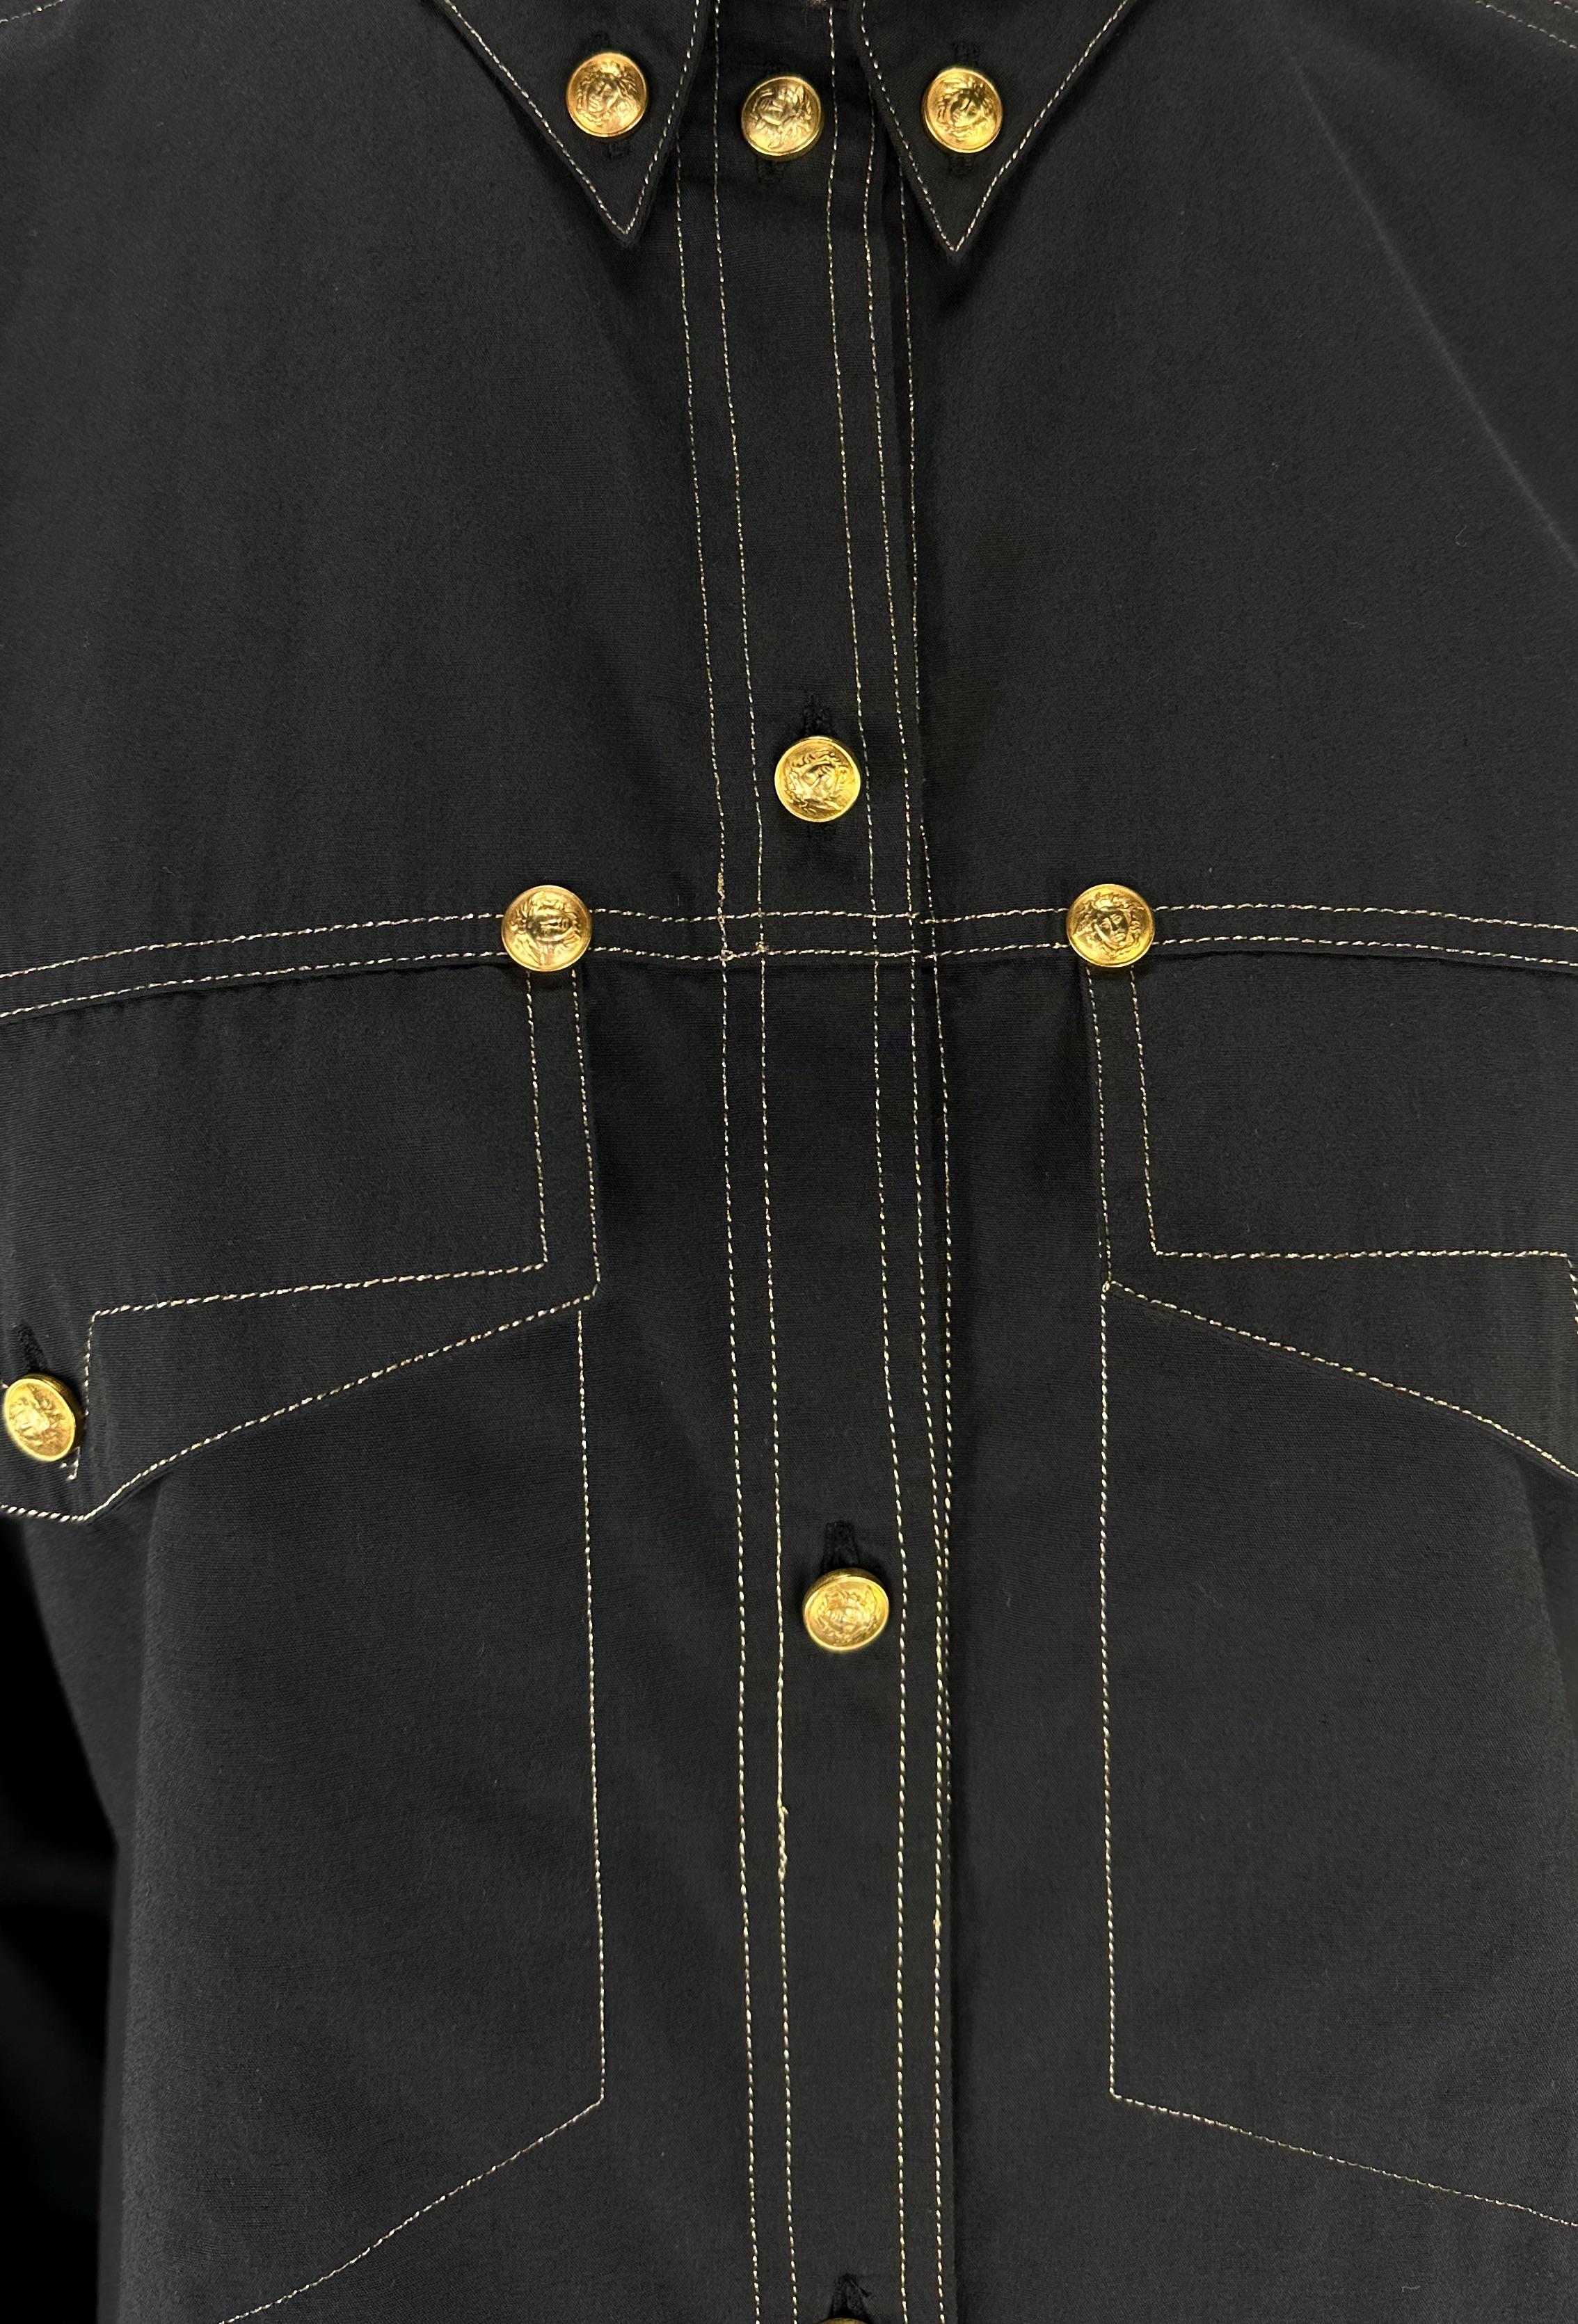 Voici une fabuleuse chemise noire boutonnée de Gianni Versace, conçue par Gianni Versace. Issue de la collection automne-hiver 1992, cette chemise d'inspiration occidentale est recouverte de boutons et de clous en relief Versace Medusa de couleur